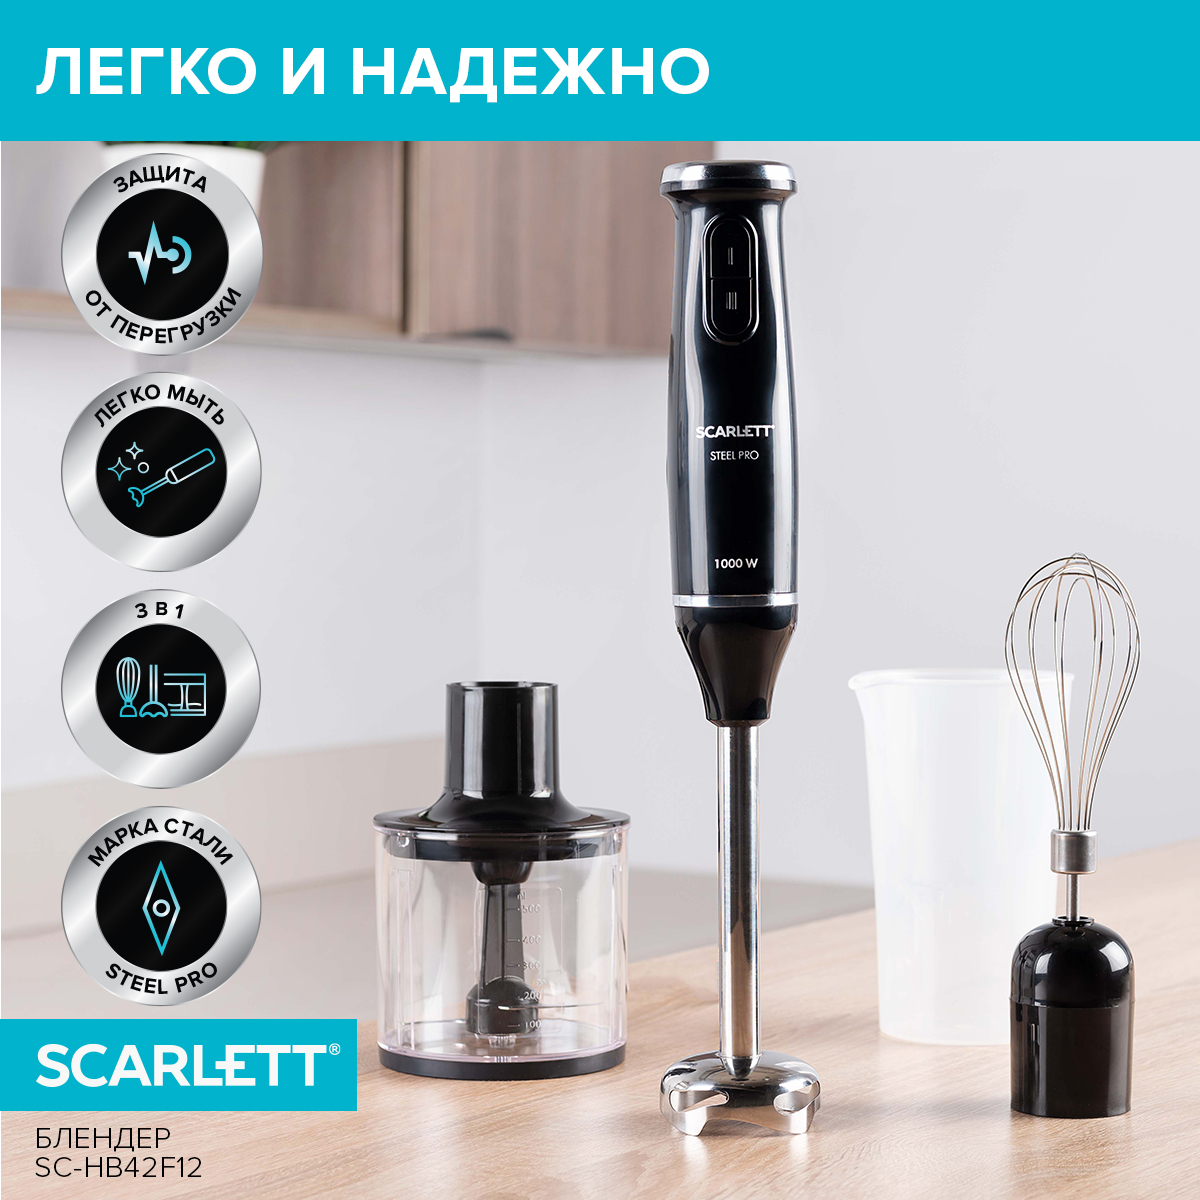 Погружной блендер Scarlett SC-HB42F12 черный, купить в Москве, цены в интернет-магазинах на Мегамаркет